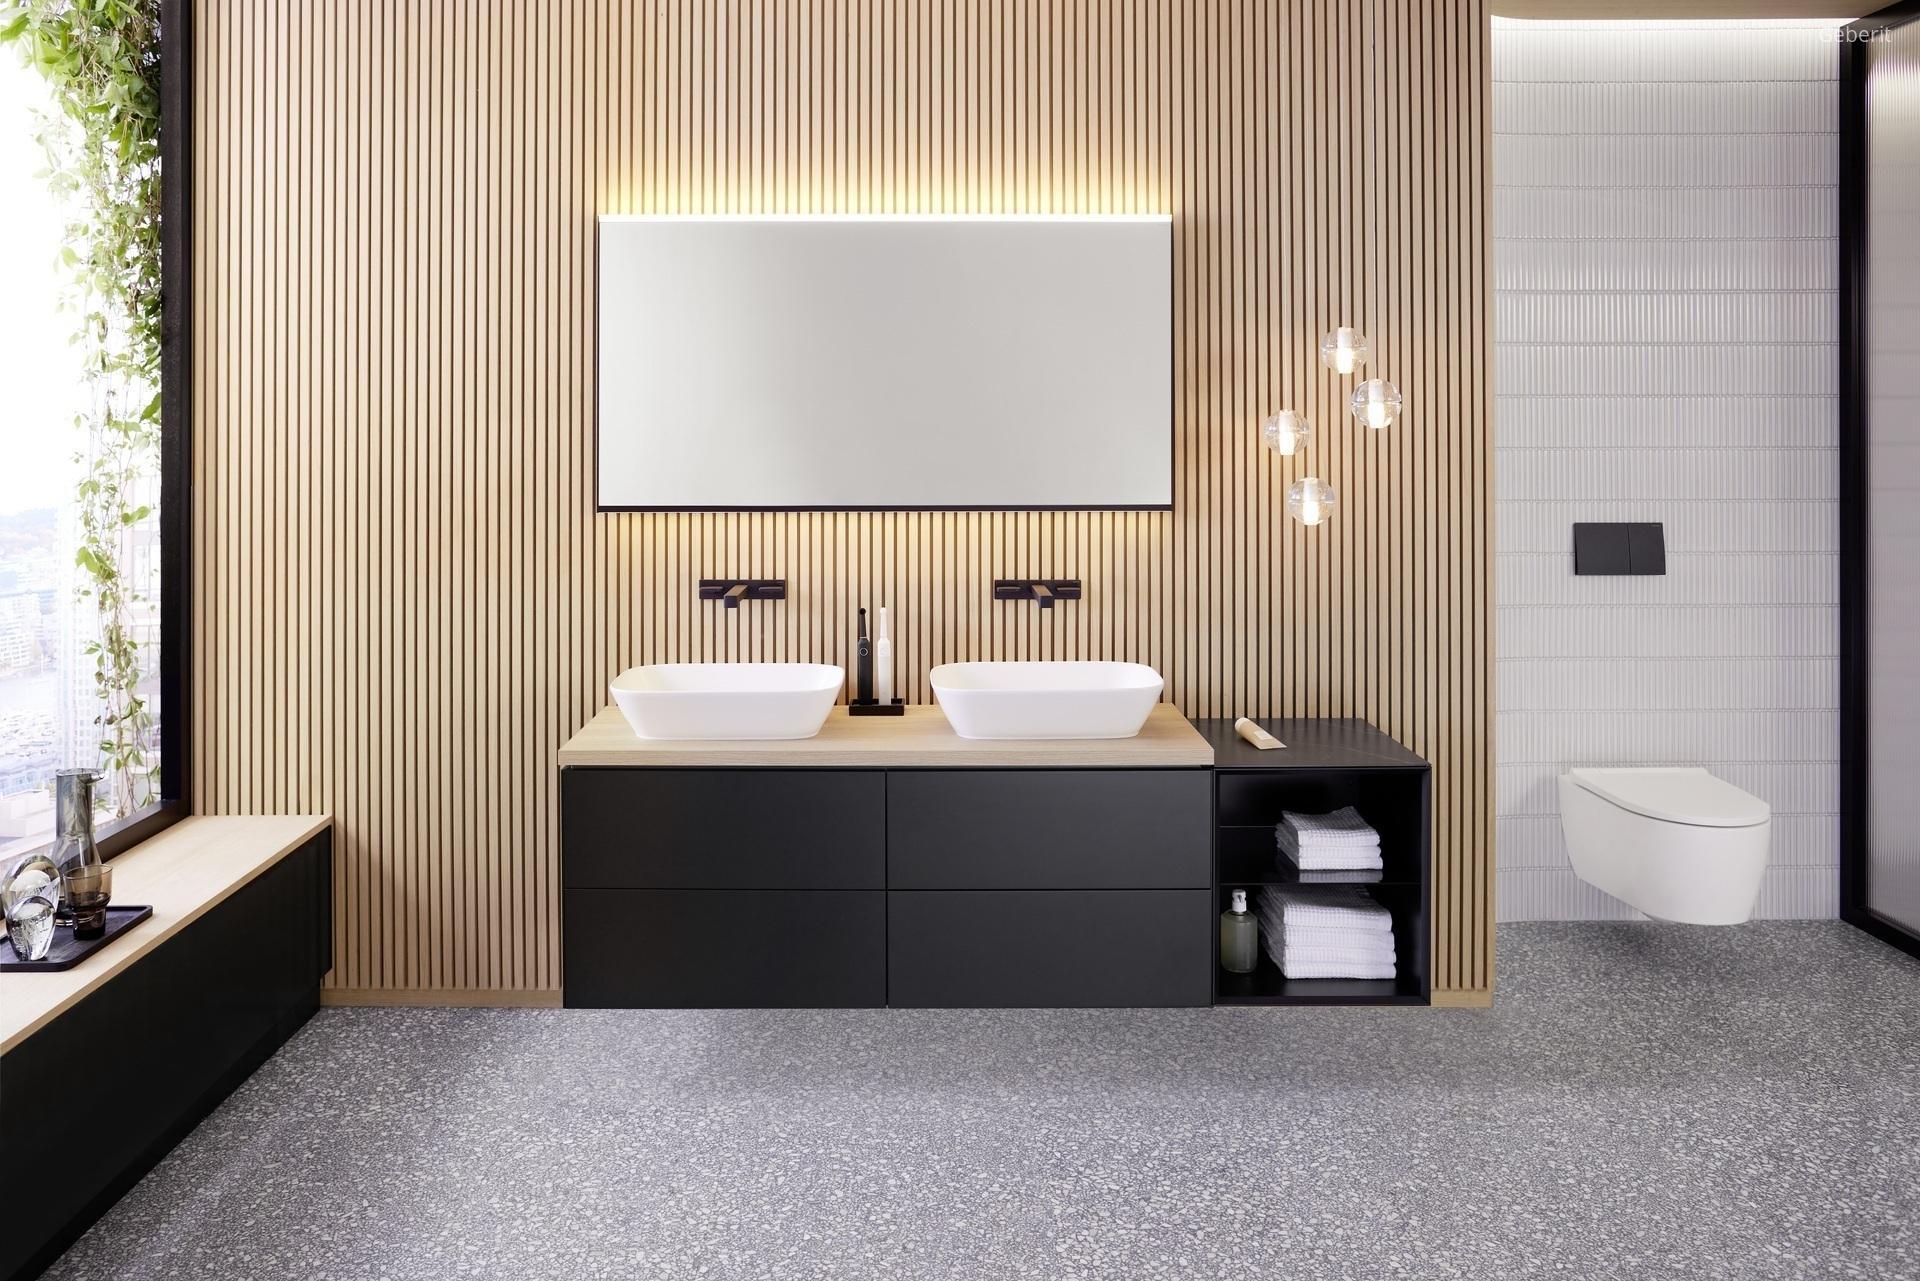 Matt fekete fürdőszobabútor és működtetőlap - fürdő / WC ötlet, modern stílusban